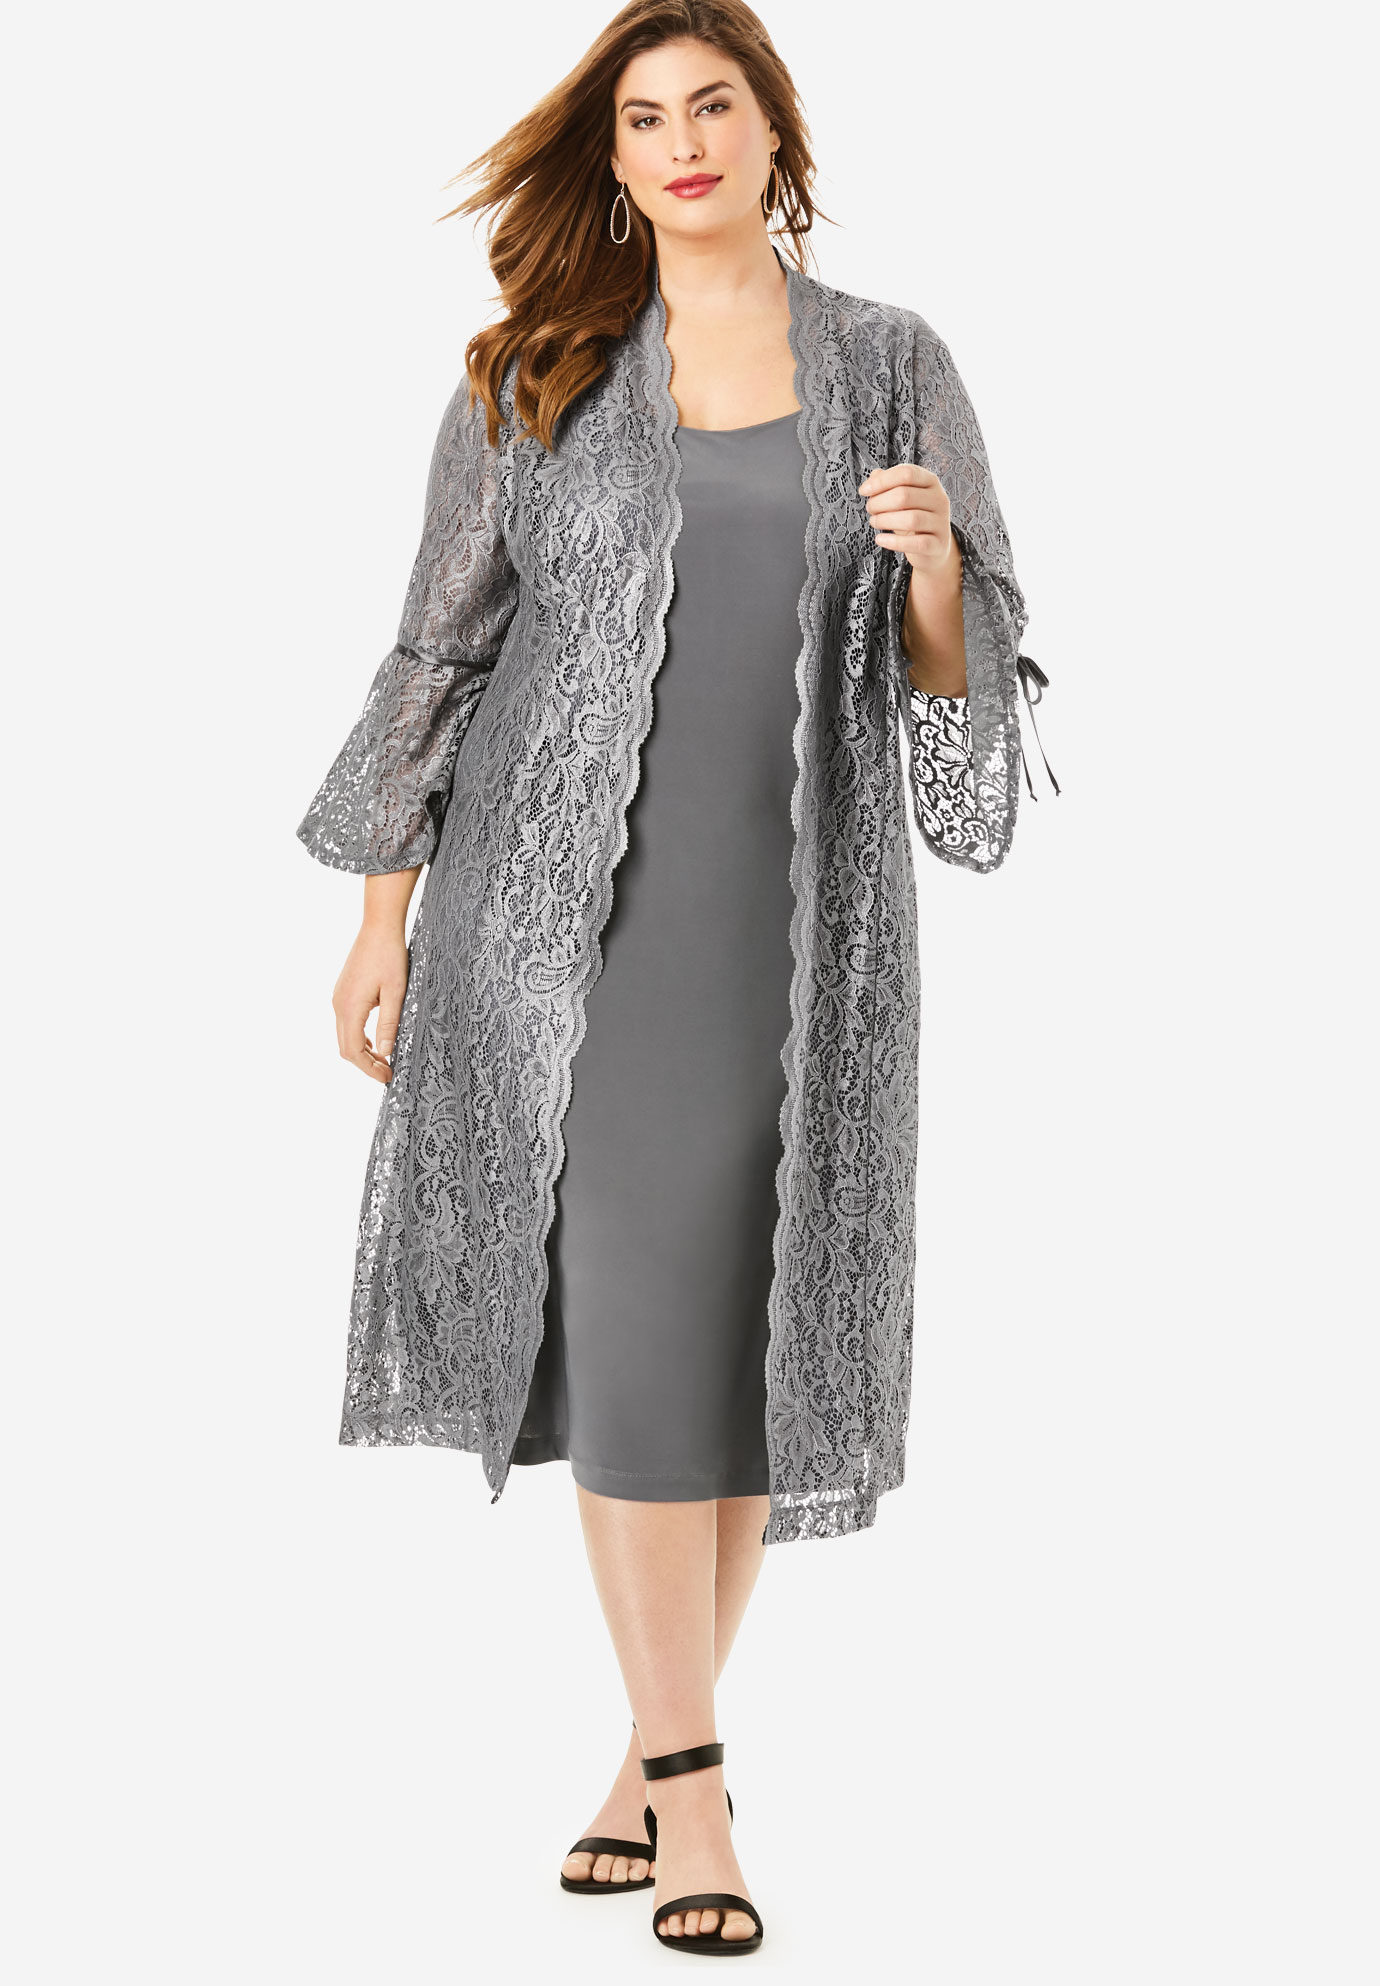 Lace Duster Jacket Dress Set | Plus SizeDresses | Roaman's